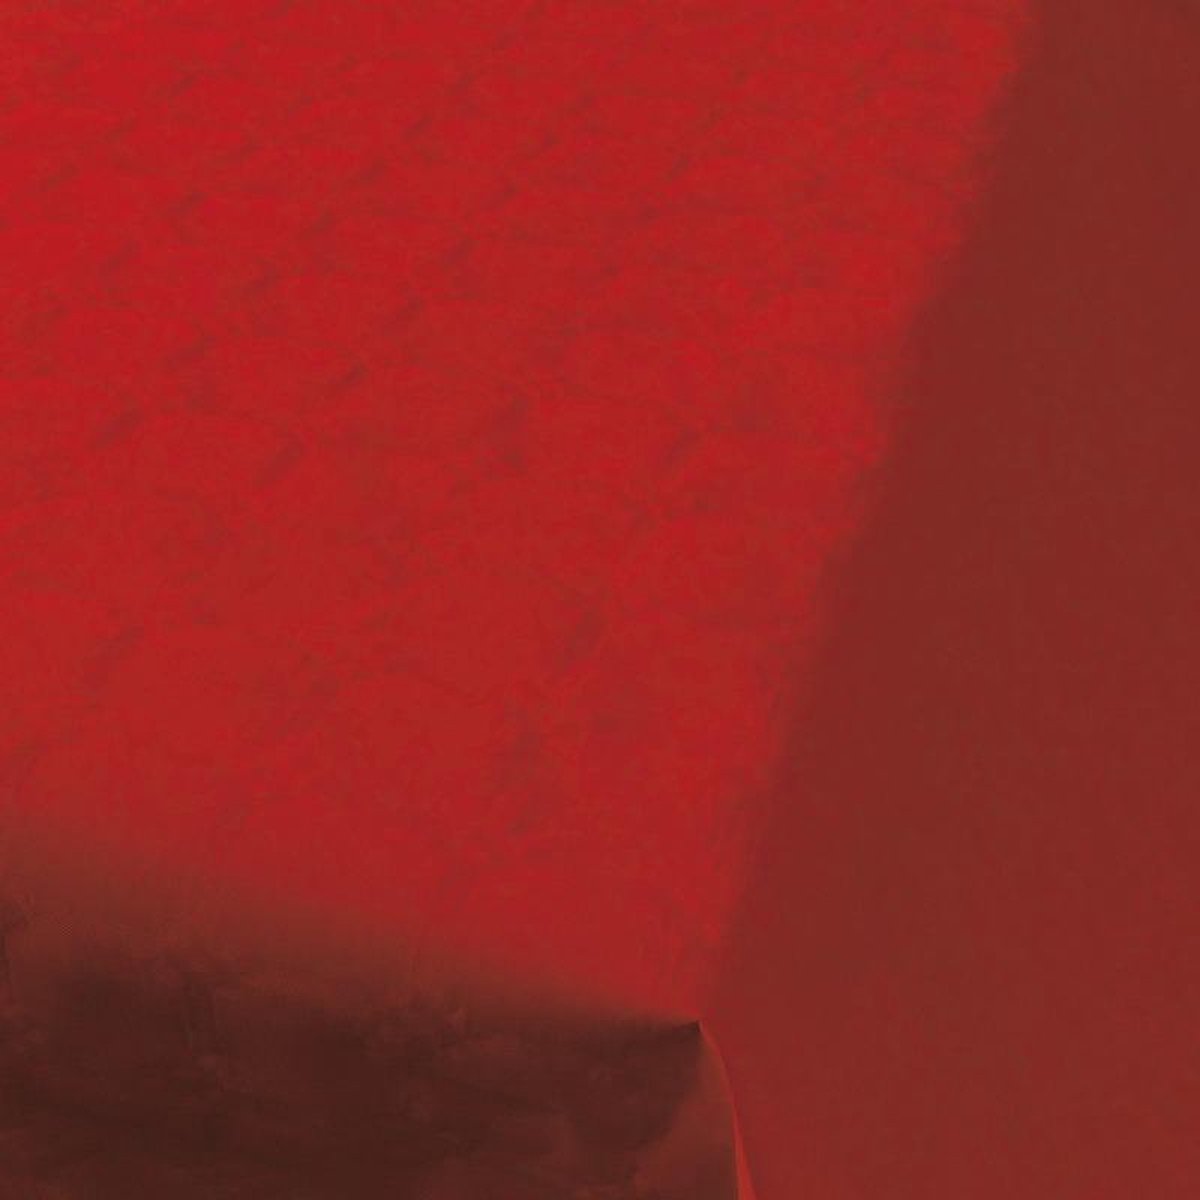 2x Bordeauxrood papieren tafellaken/tafelkleed 800 x 118 cm op rol - Bordeaux rode thema tafeldecoratie versieringen